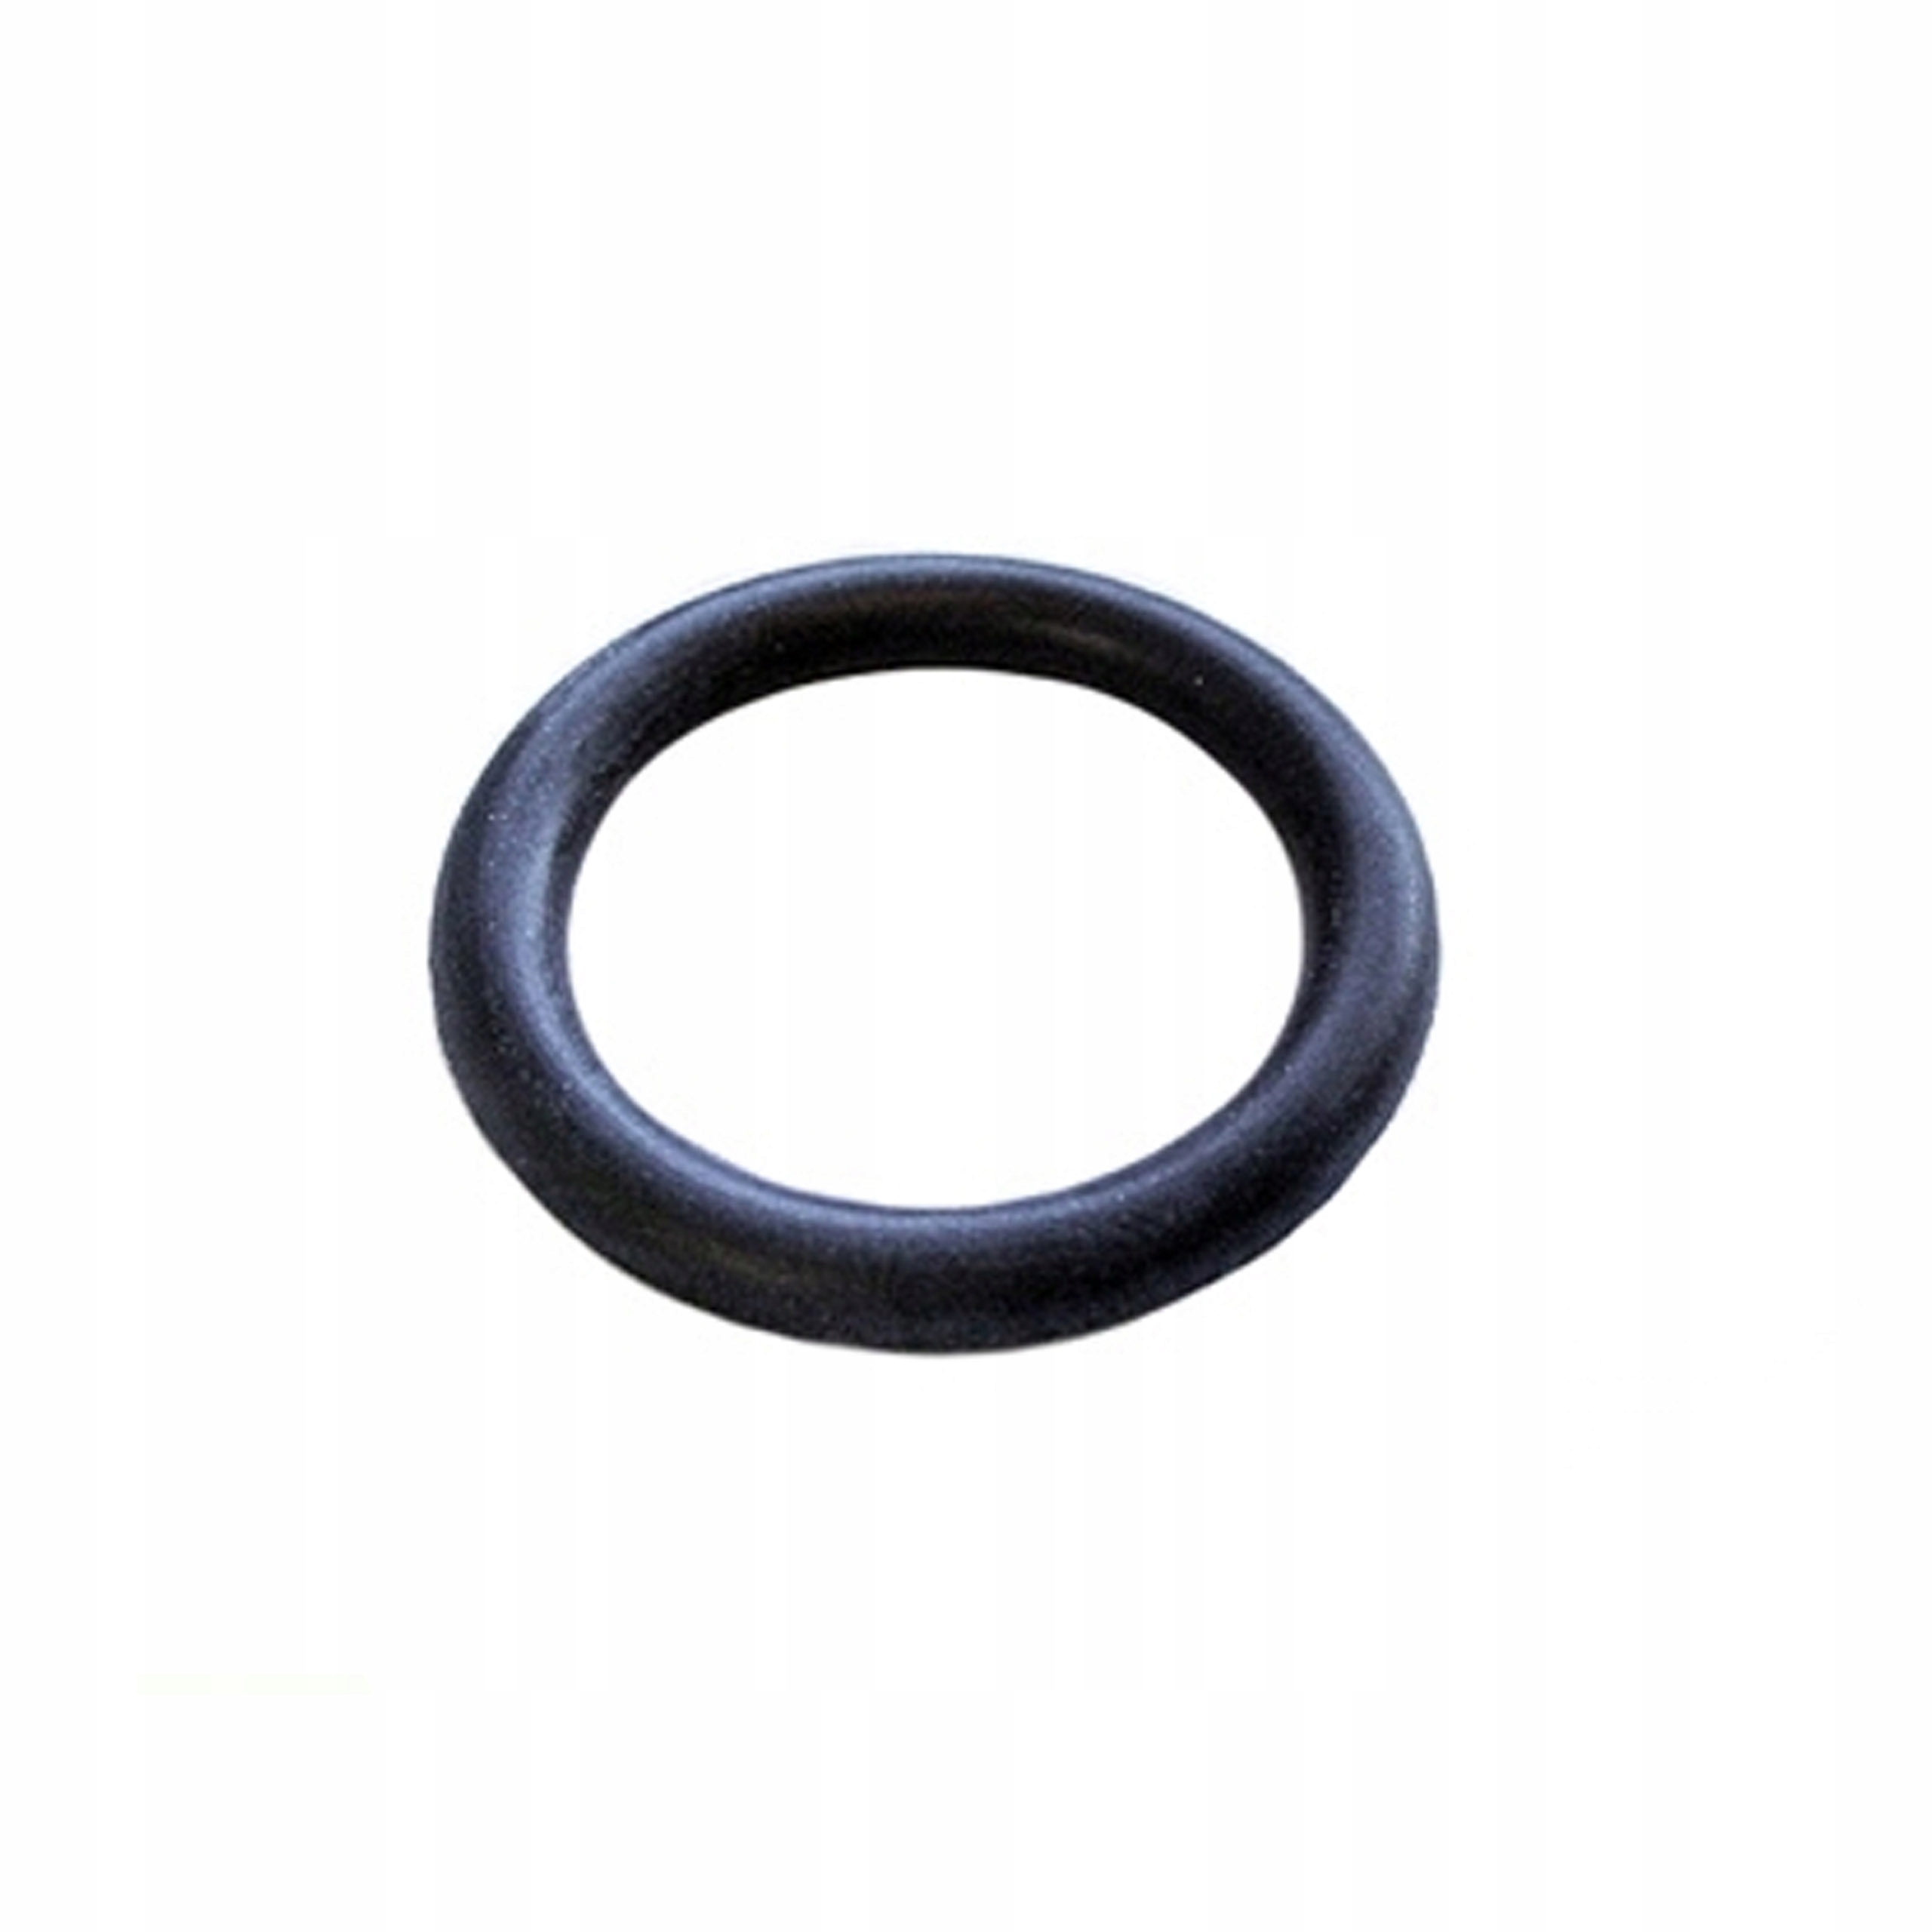 Уплотнительное кольцо воздушного фильтра. Прокладка датчика FEBI 12409. Уплотнительное кольцо ож гольф 2. Уплотнительное кольцо на датчик 6235752. Кольцо уплотнительное термостата Ауди 80.